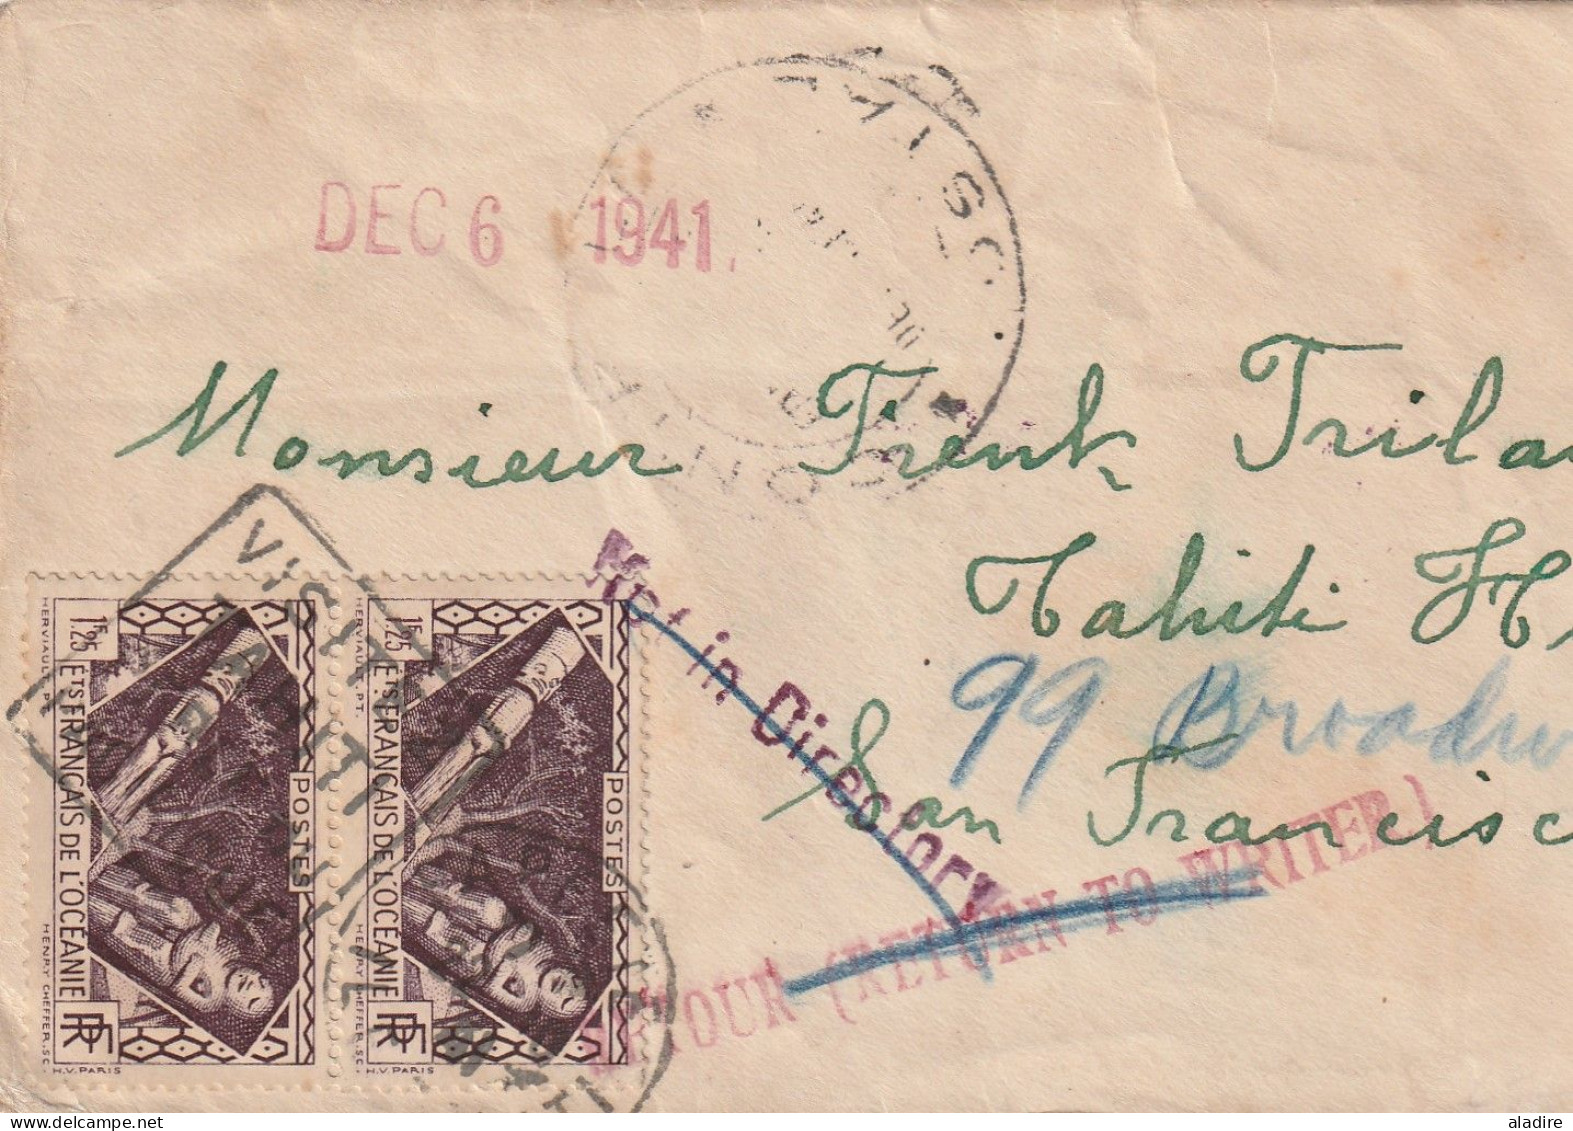 1896 - 1968 - Océanie Polynésie française - collection de 11 cartes, enveloppes et entier - histoire postale - 22 scans